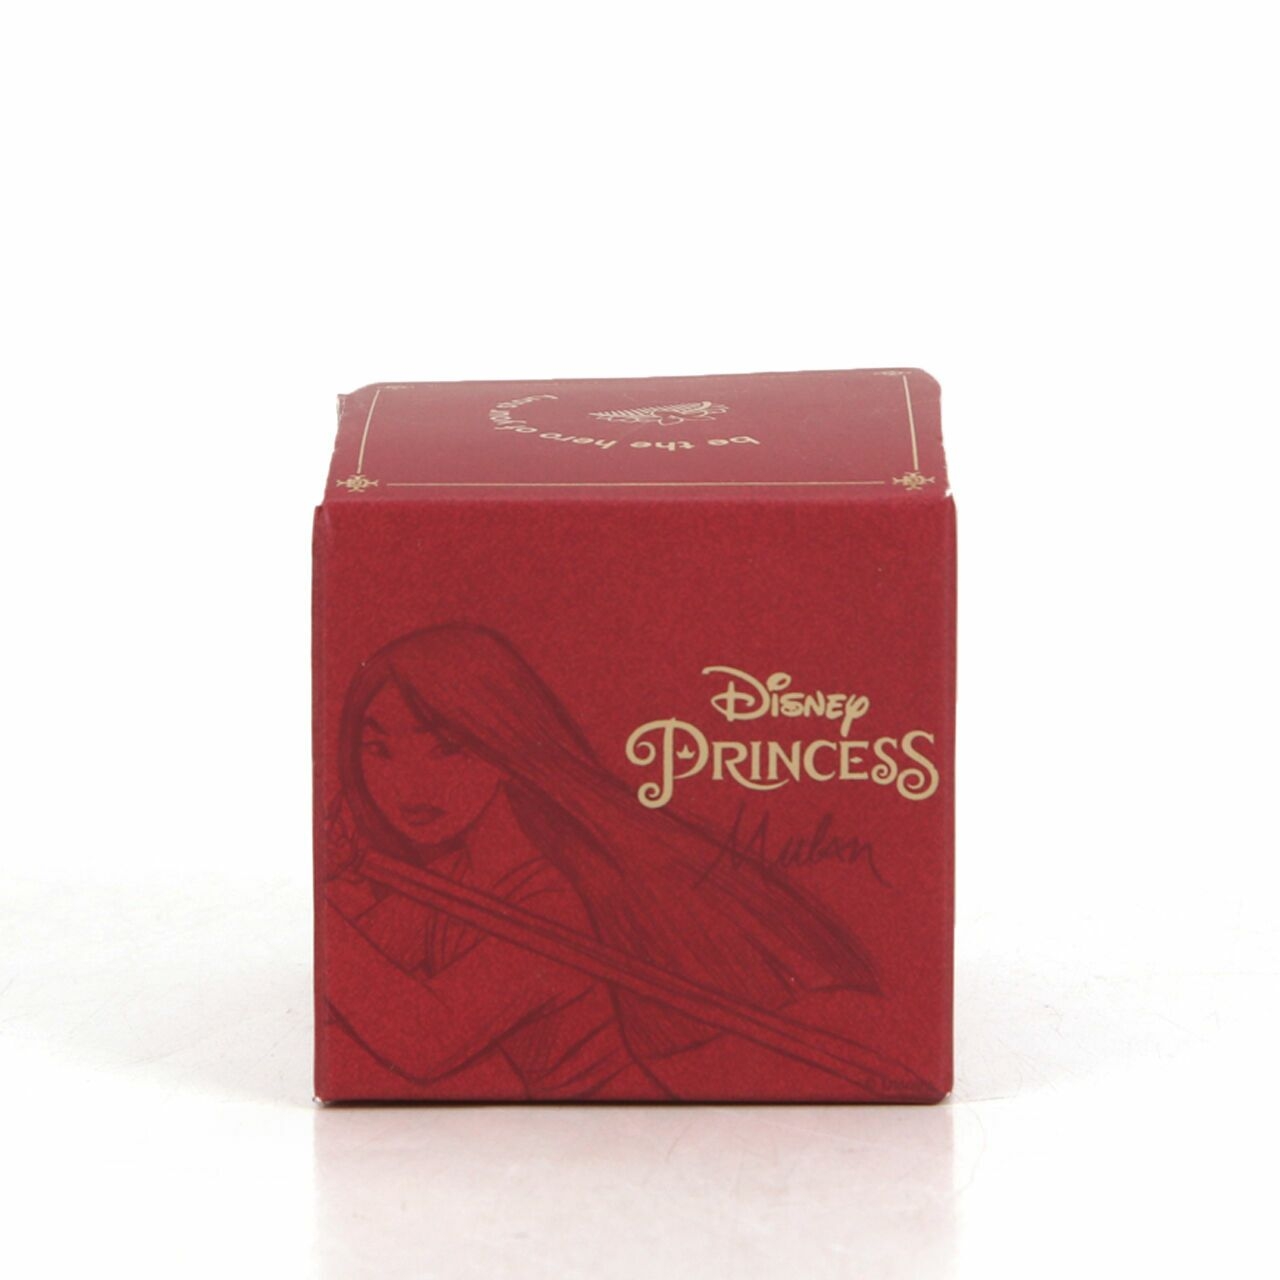 Secondate x Disney Princess Dynasty Face Castle Faces